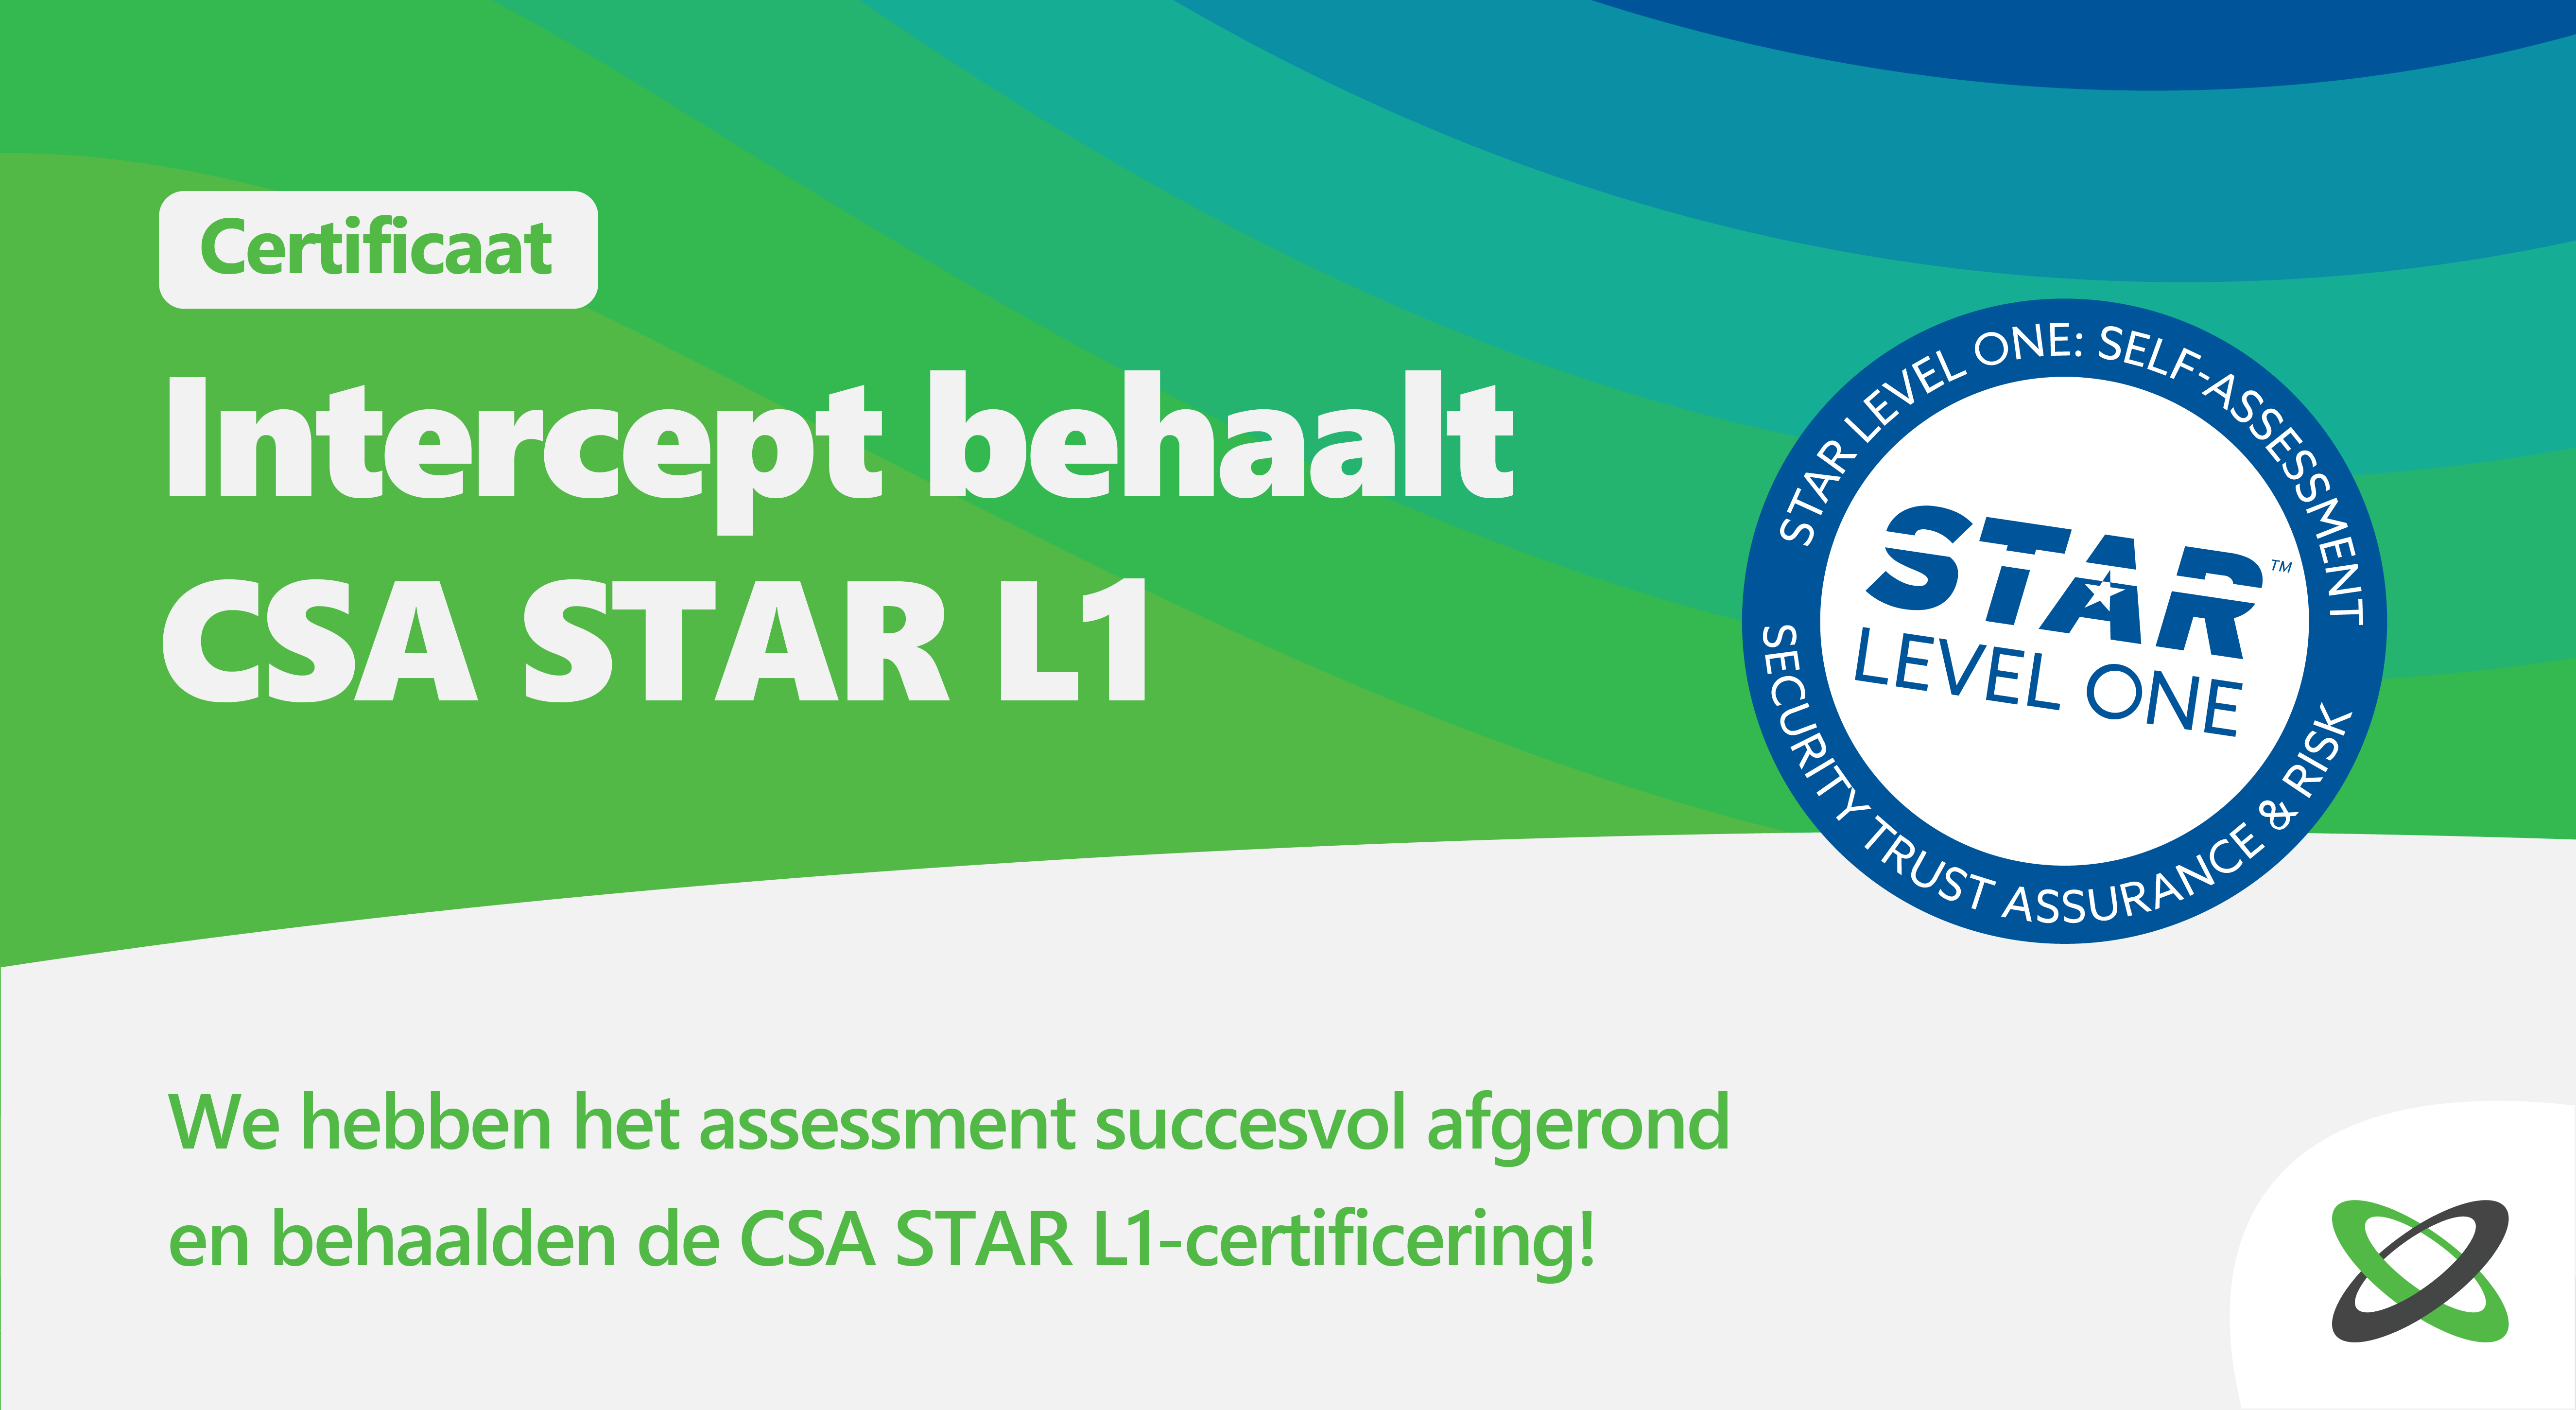 CSA Star L1 NL